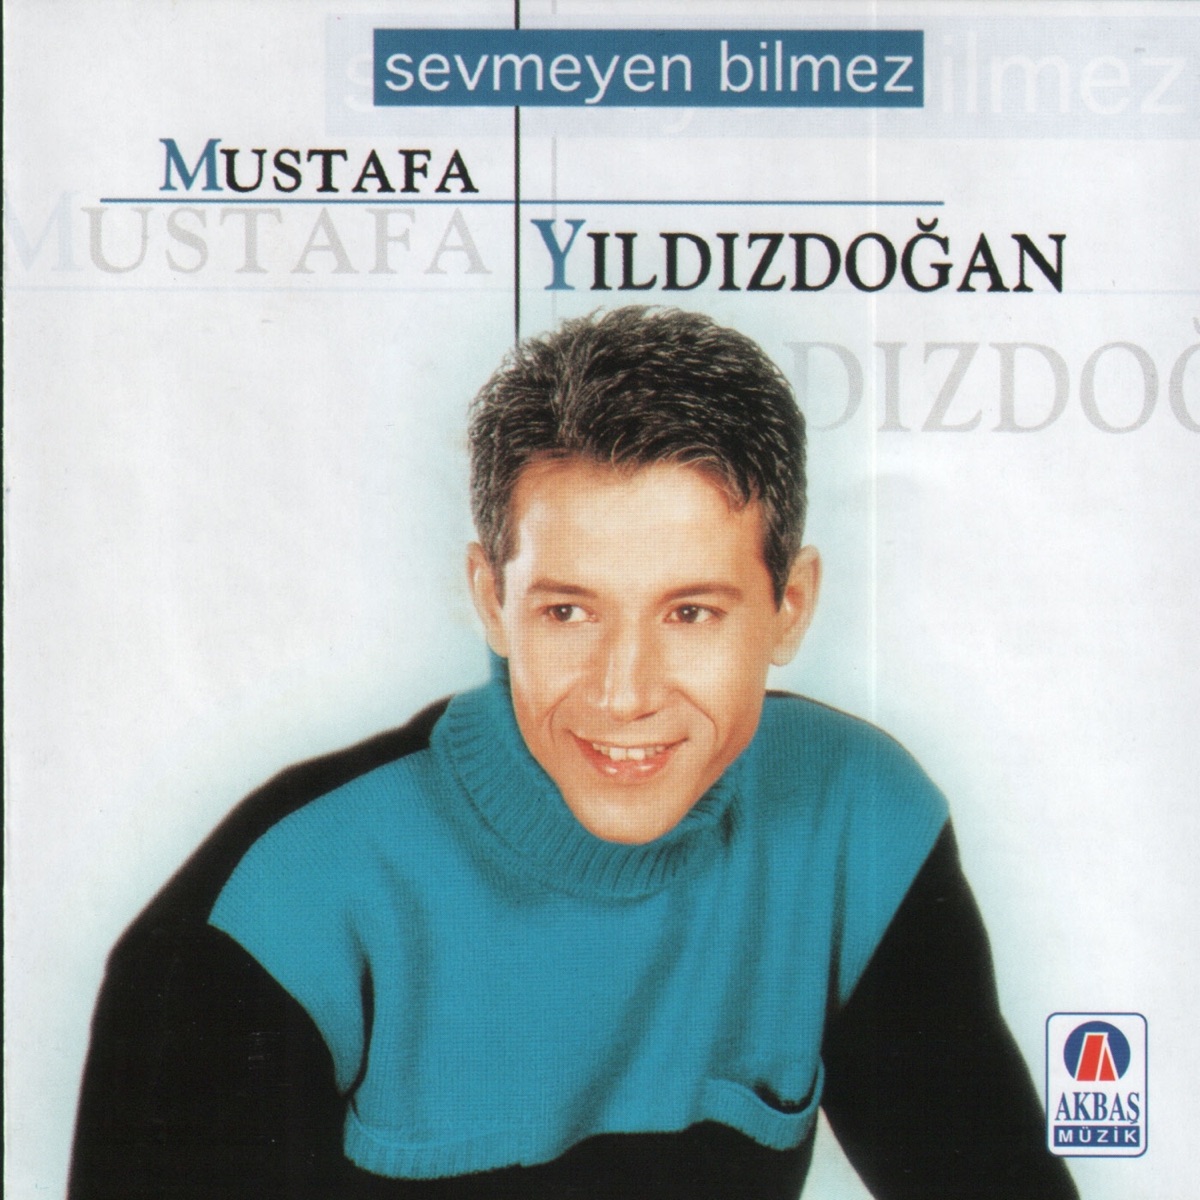 Börteçine - Single - Album by Mustafa Yıldızdoğan - Apple Music